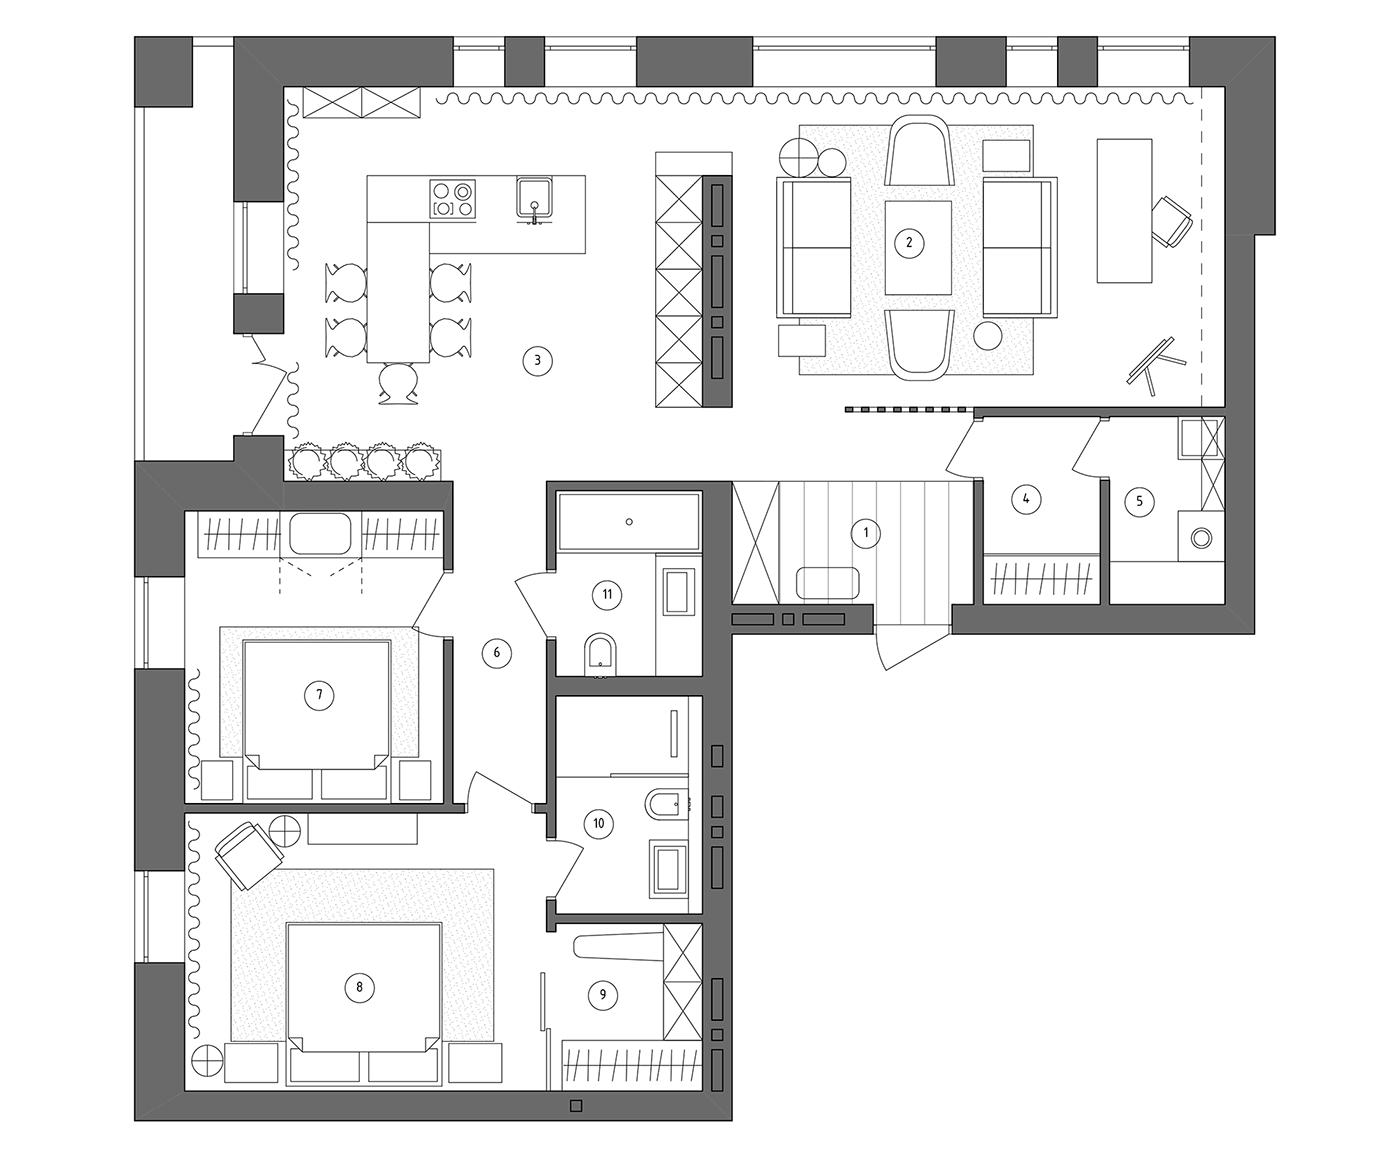 3D architecture flat interior design  Minimalism Render visualization дизайн интерьера интерьер квартира